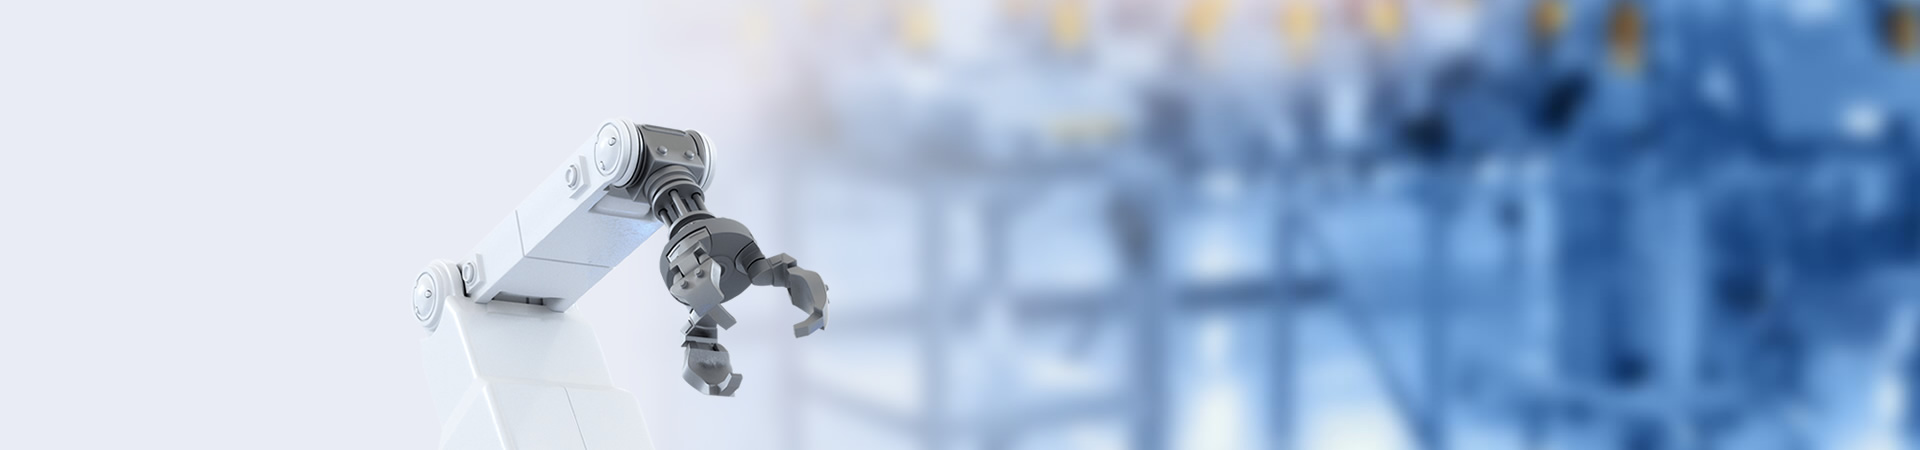 Logotipo personalizado folha de flandres lata Kpop desenho animado anime pino de botão personalizado 3D esmalte maçônico militar exército escoteiro piloto asa capelão guarda de segurança oficial distintivo de metal